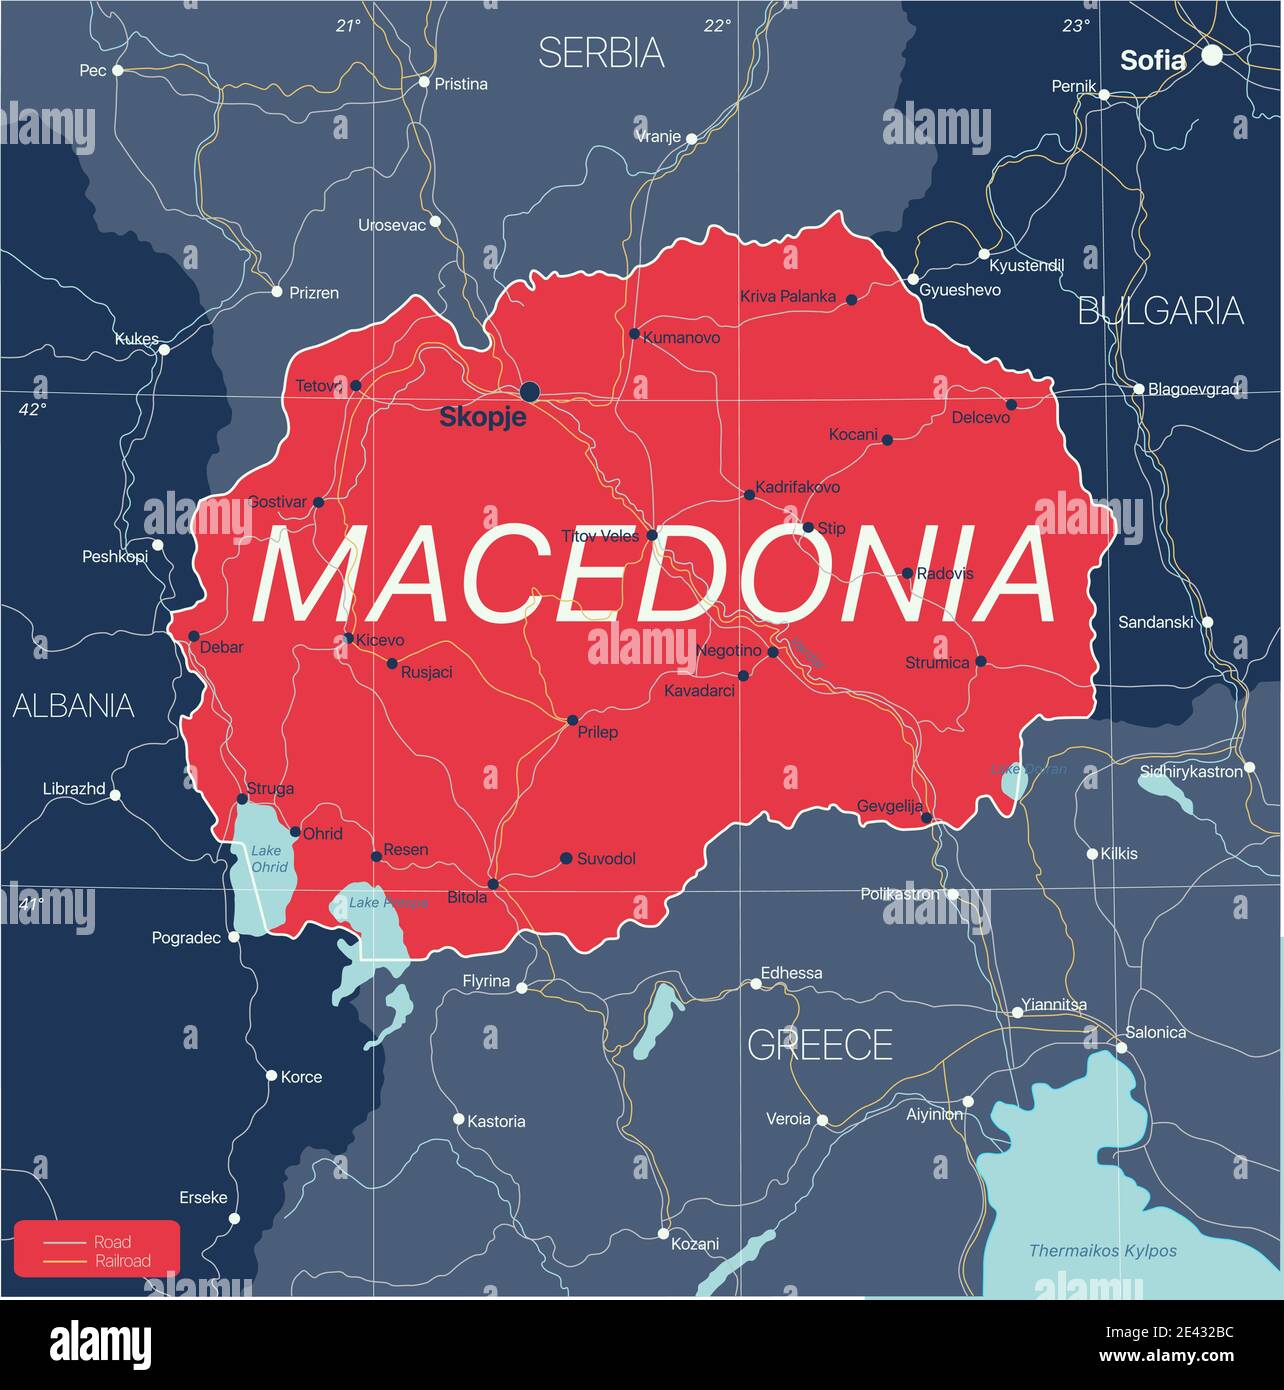 Mazedonien Land detaillierte editierbare Karte mit Regionen Städte und Städte, Straßen und Eisenbahnen, geografische Standorte. Vector EPS-10-Datei Stock Vektor